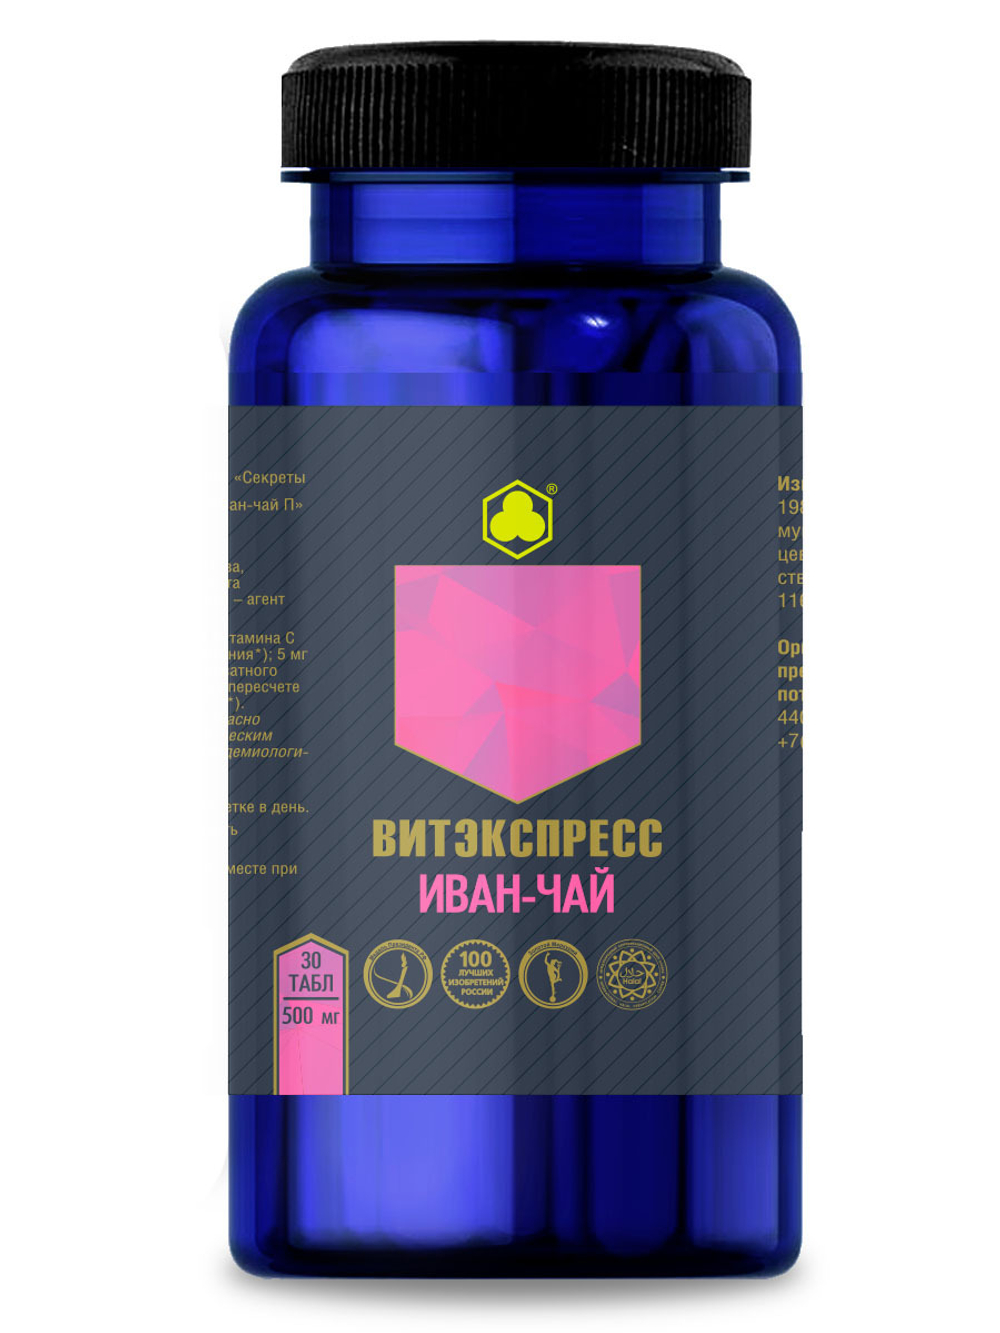 Органик комплекс Иван-чай  №30 таб. массой 500 мг